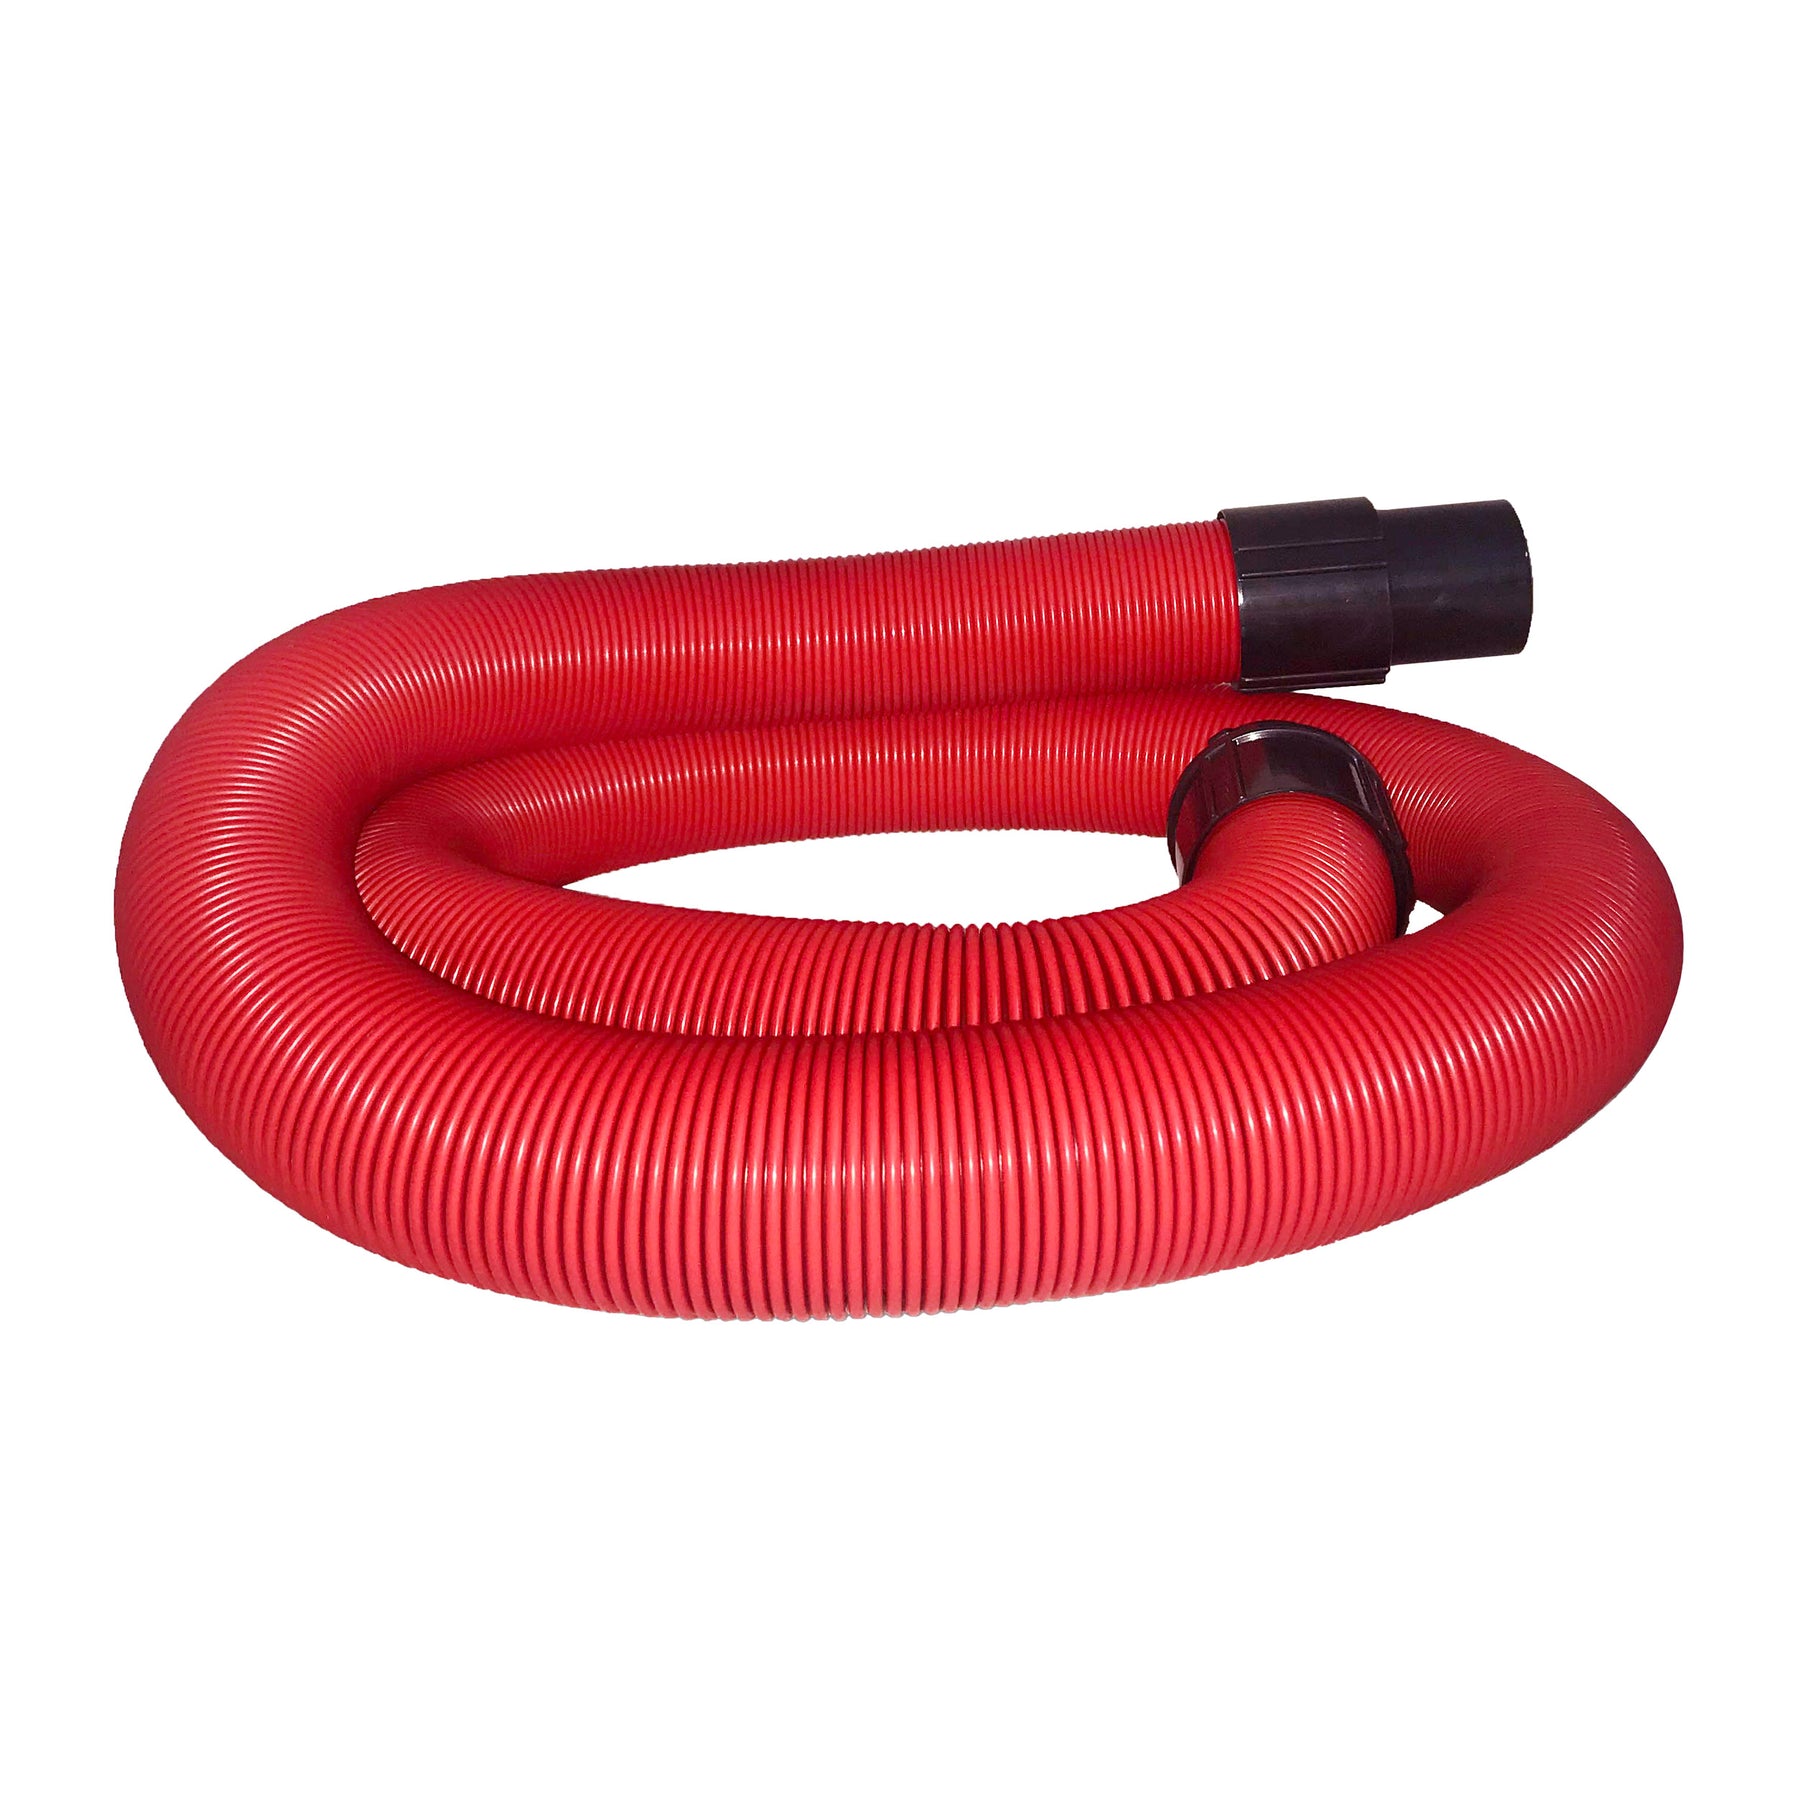 Tubo di ricambio rosso flessibile per asciugatori Brühl, lunghezza 5 metri, con connettori neri ad entrambe le estremità, adatto per estendere la portata durante i processi di asciugatura dei veicoli.